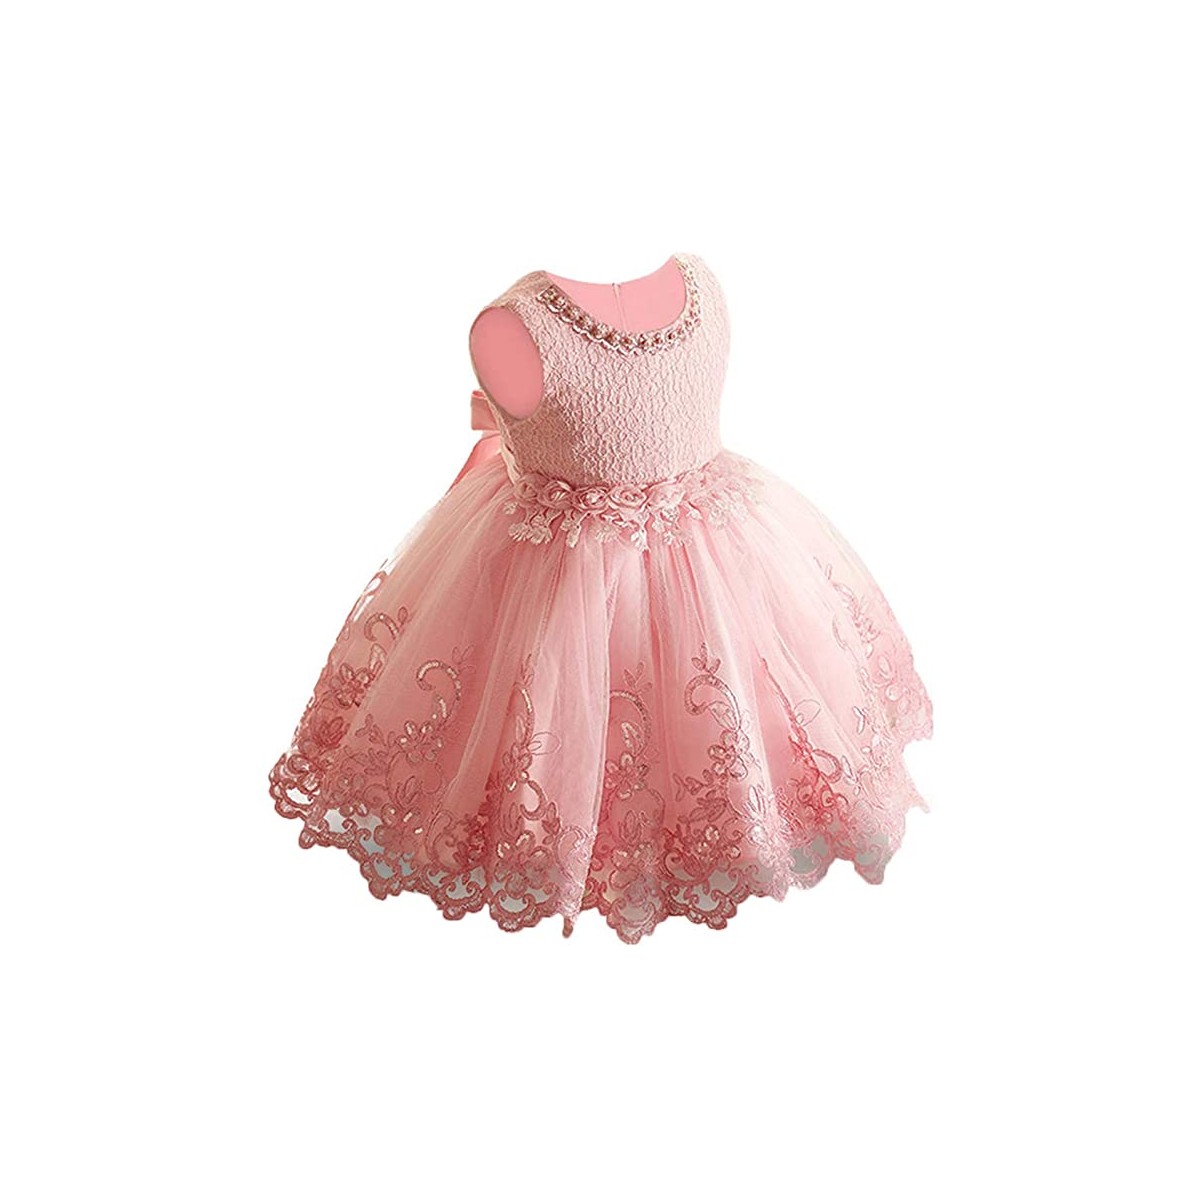 Vestito da cerimonia, rosa confetto, per bambine, in tulle e cotone